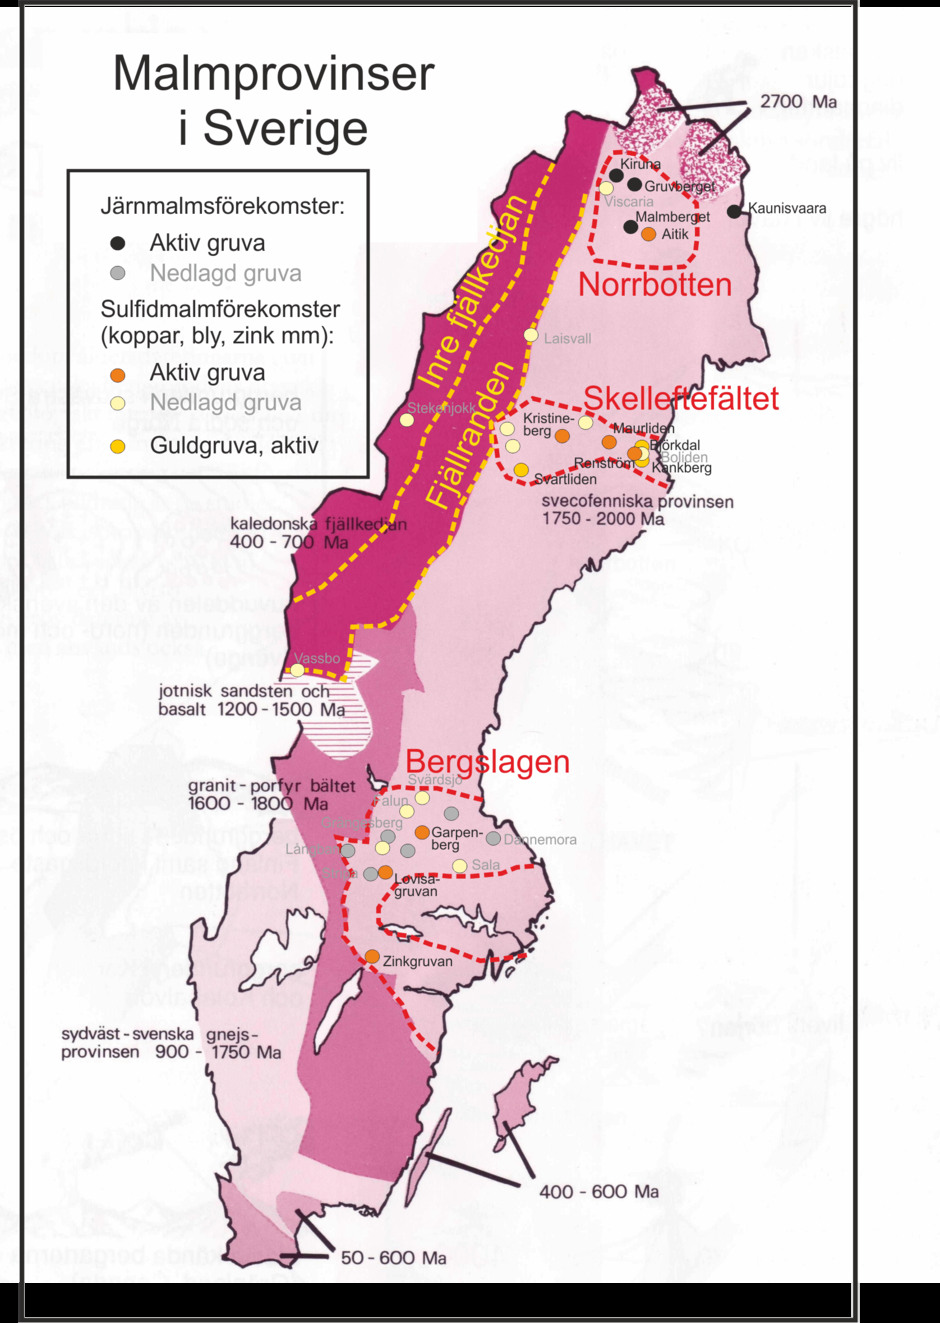 Malmprovinser i Sverige, med aktiva gruvor och större numera nedlagda gruvor, inlagda på en mycket förenklad geologisk karta över Sverige.